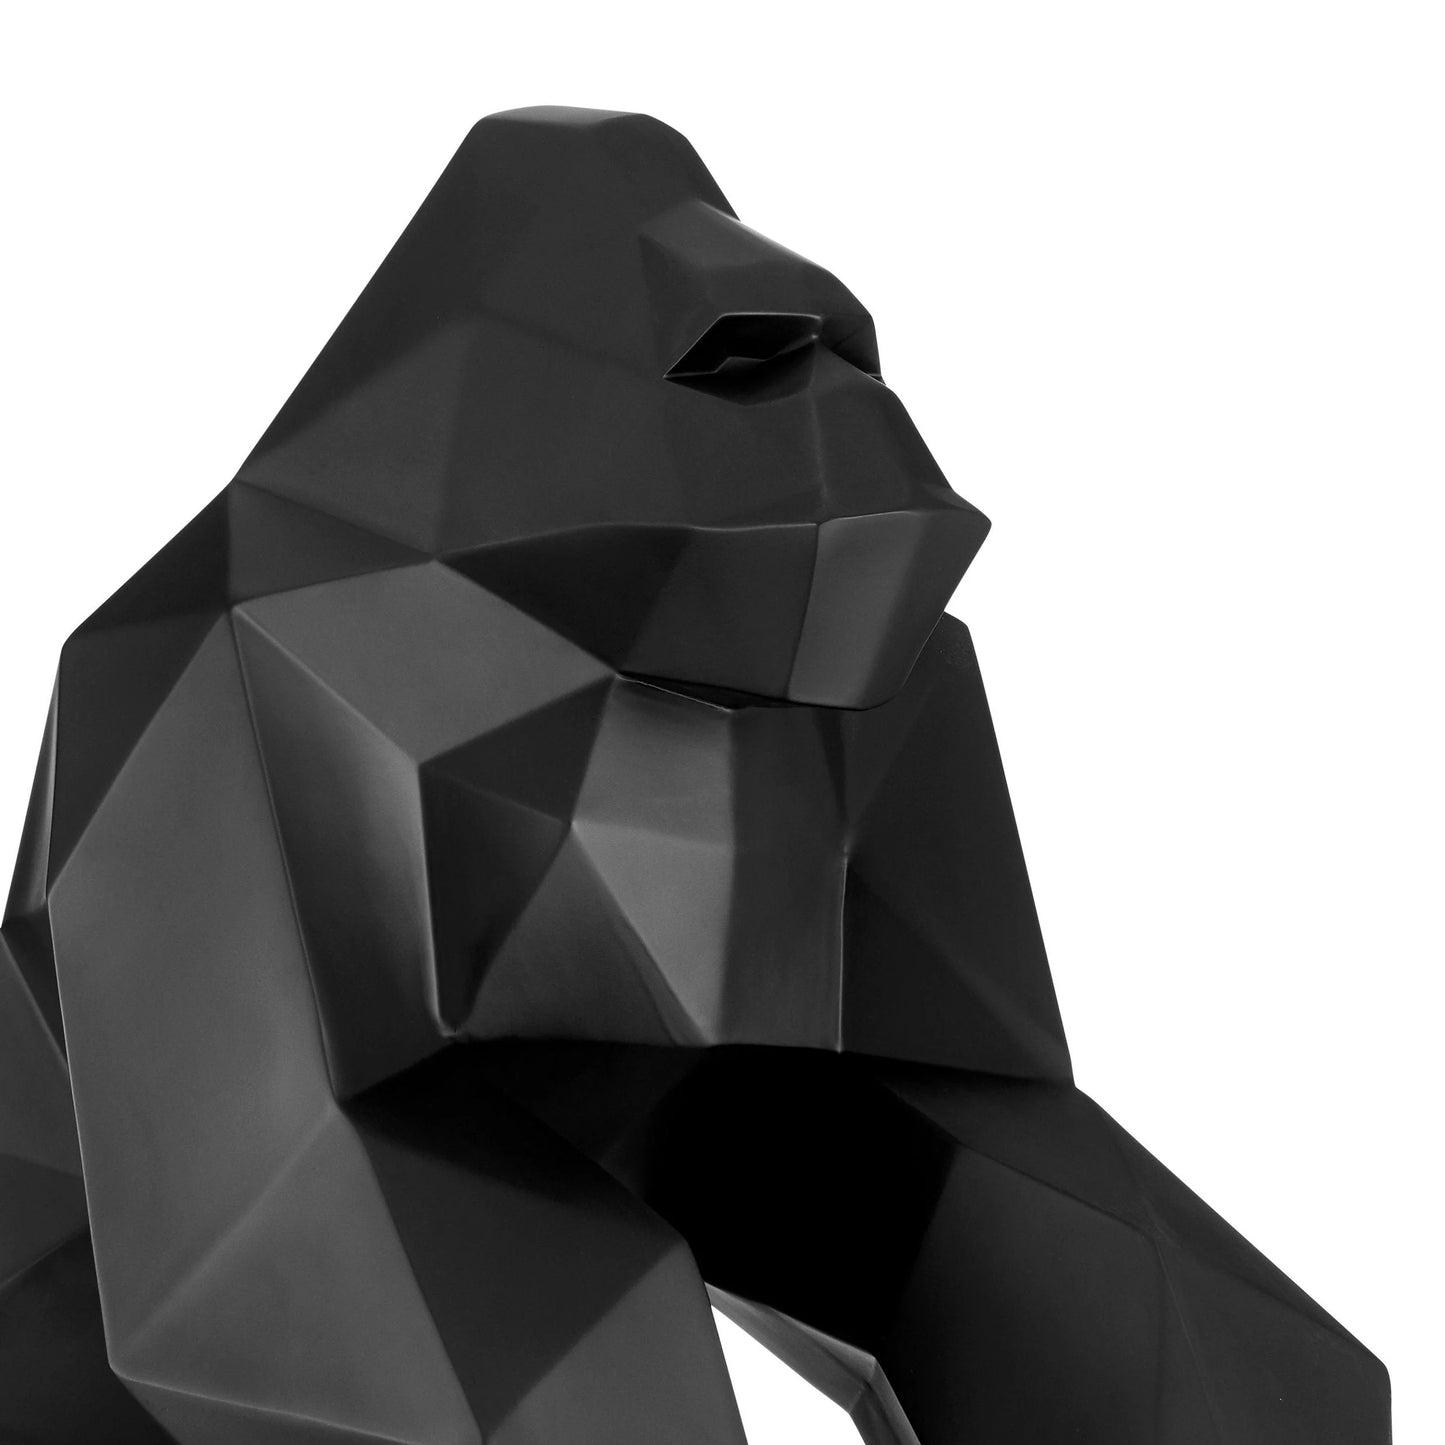 Finesse Decor Geometric Ape Sculpture Matte Black 3